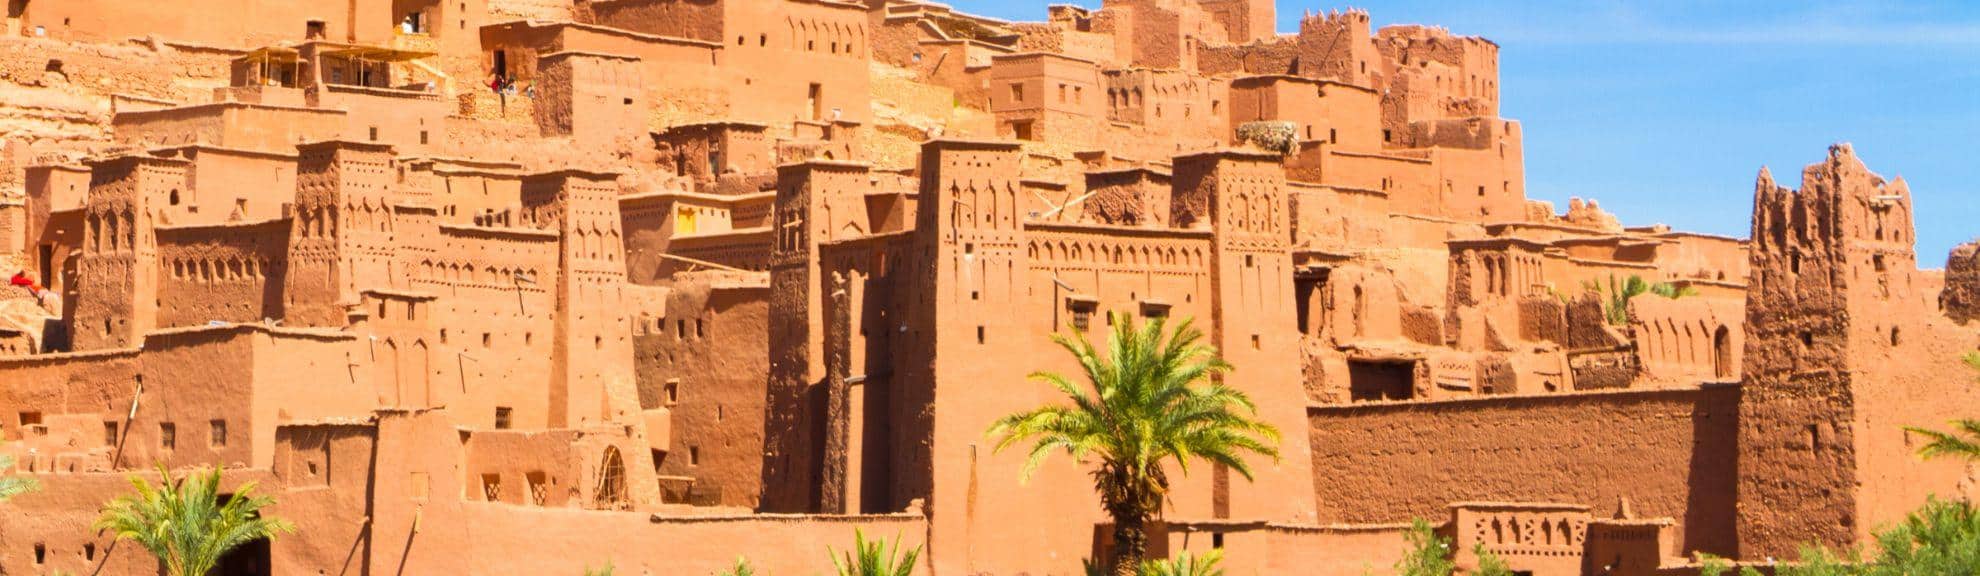 Excursion Ouarzazate depuis Marrakech – Ait Ben Haddou – À partir de 25,85€